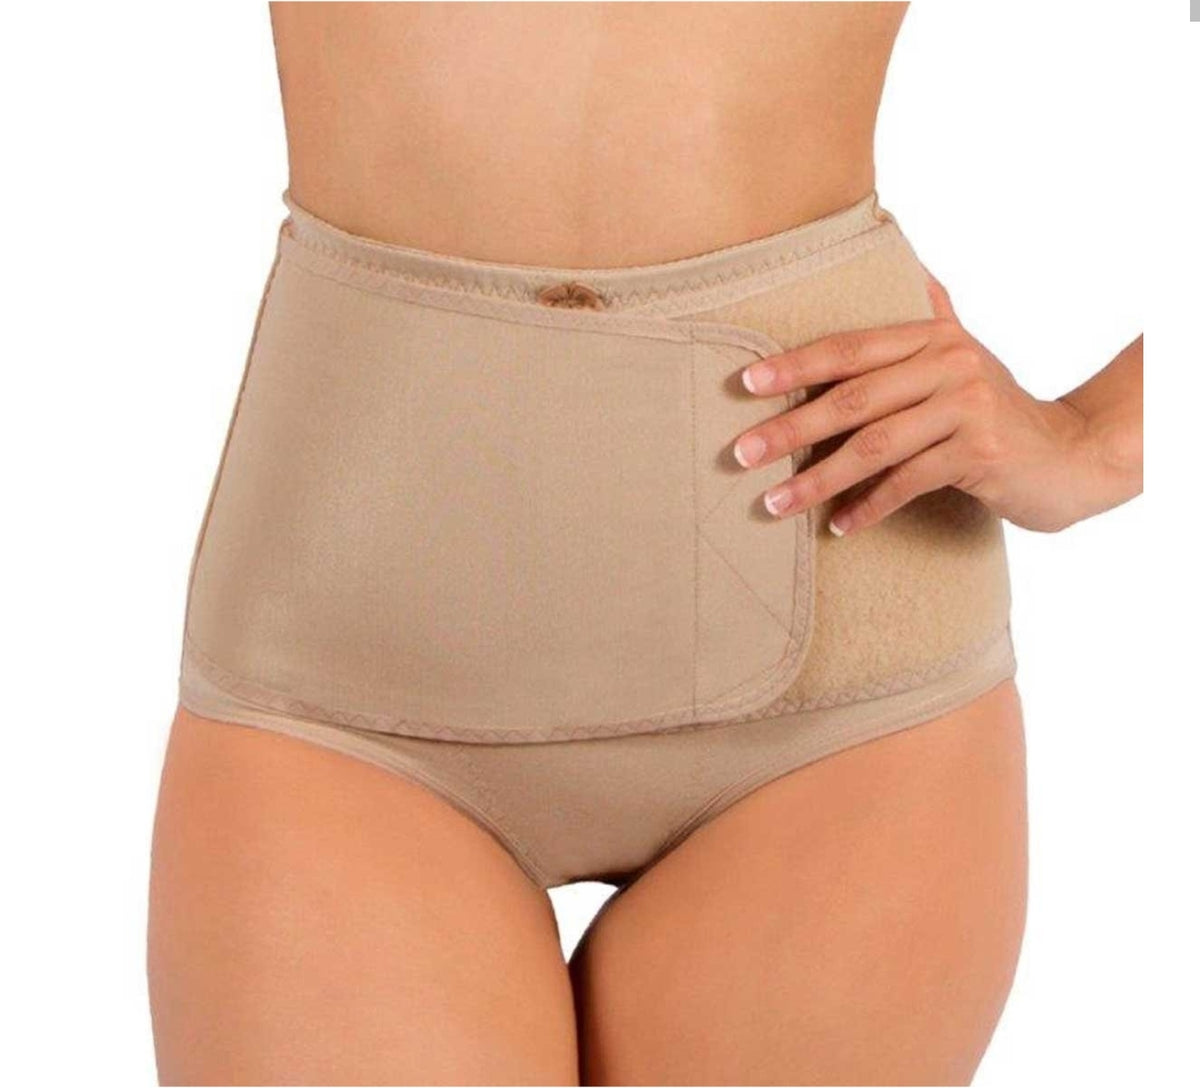 Newlook on X: ¿Qué hace nuestra Panty Faja Post Parto por ti? El modelo  575 te ayuda a recuperar la silueta después del embarazo.   / X